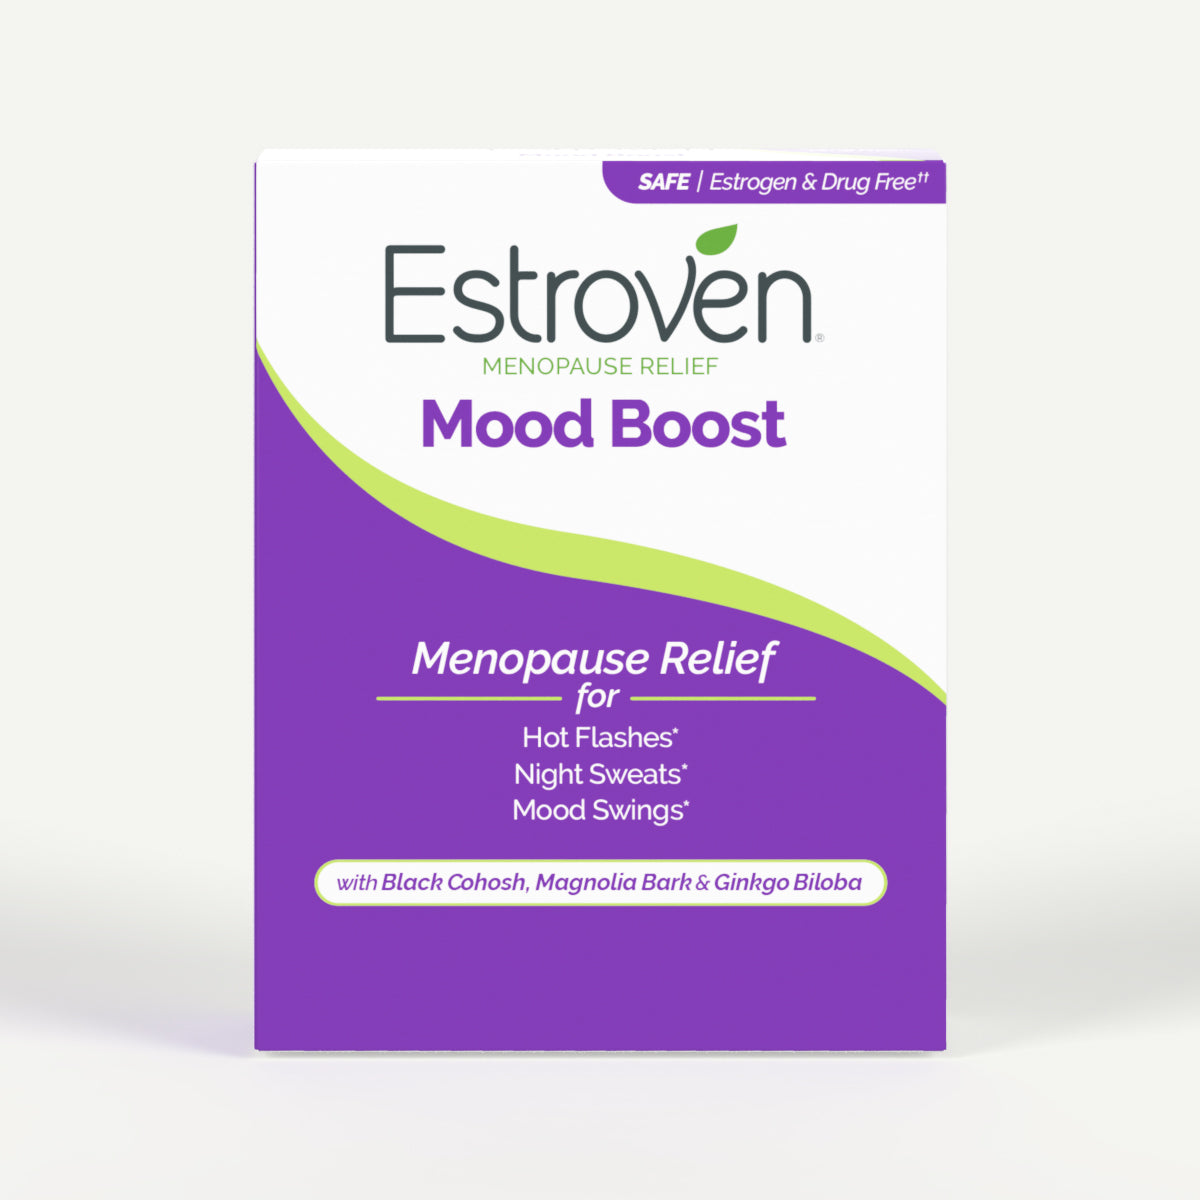 Estroven® Menopause Relief Mood Boost